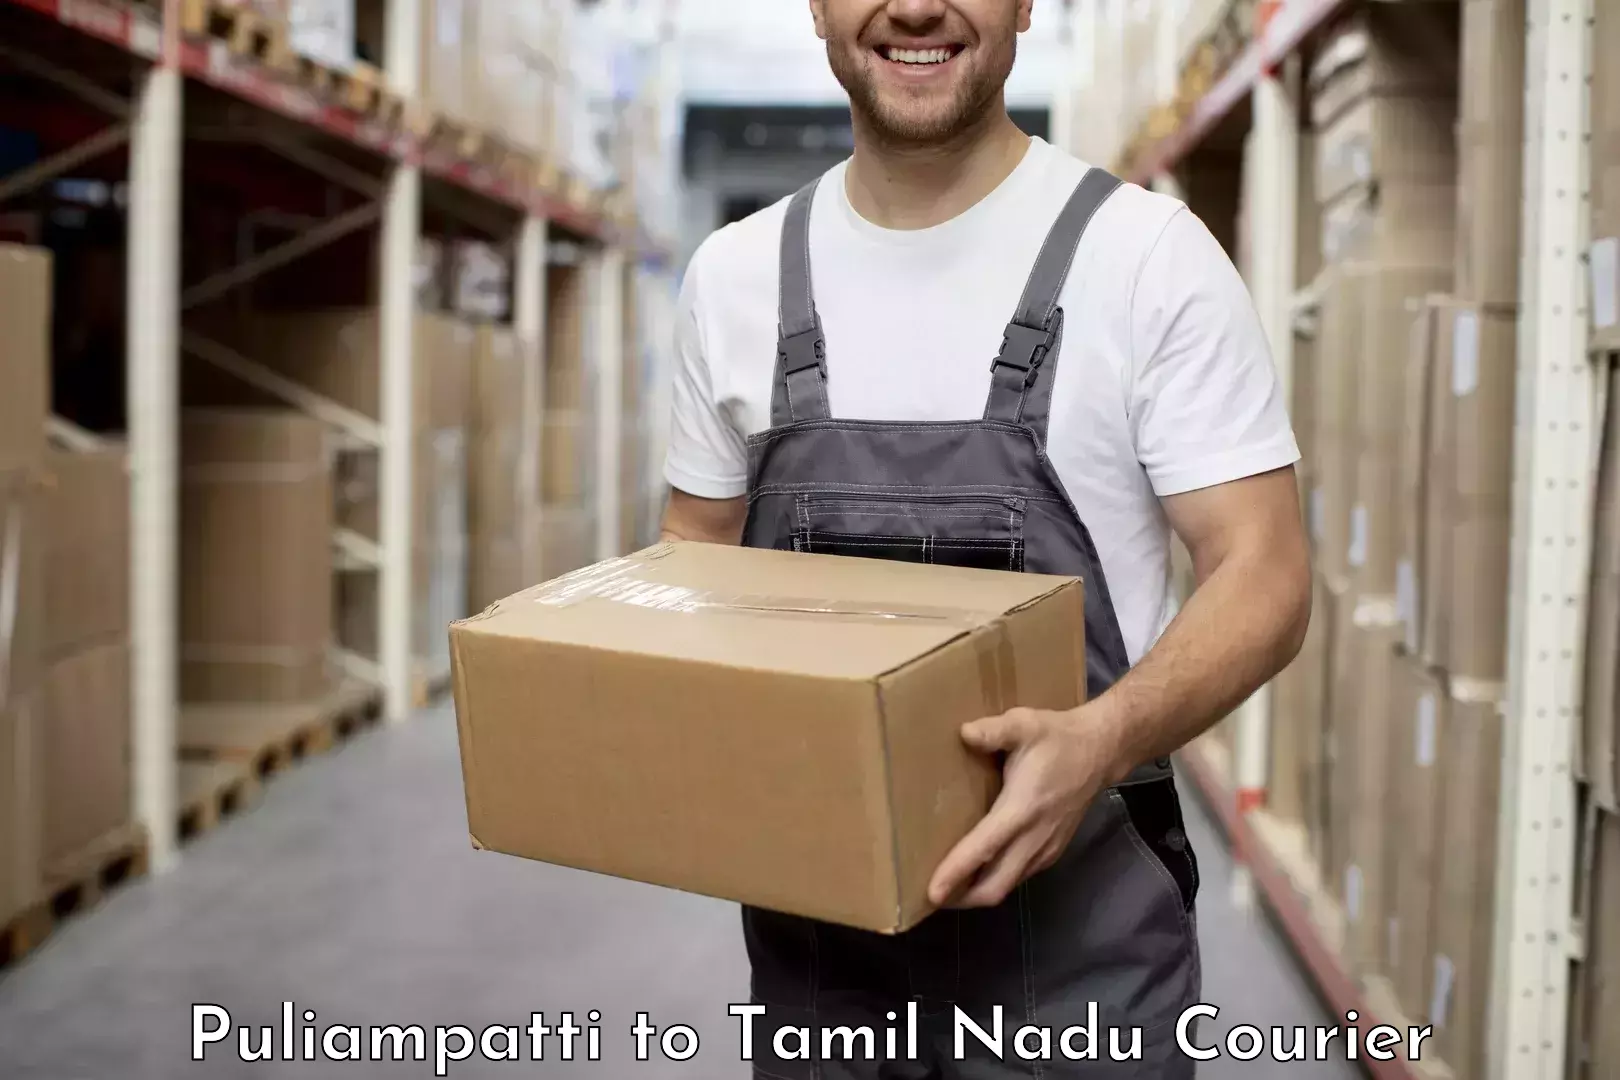 User-friendly delivery service Puliampatti to Villupuram